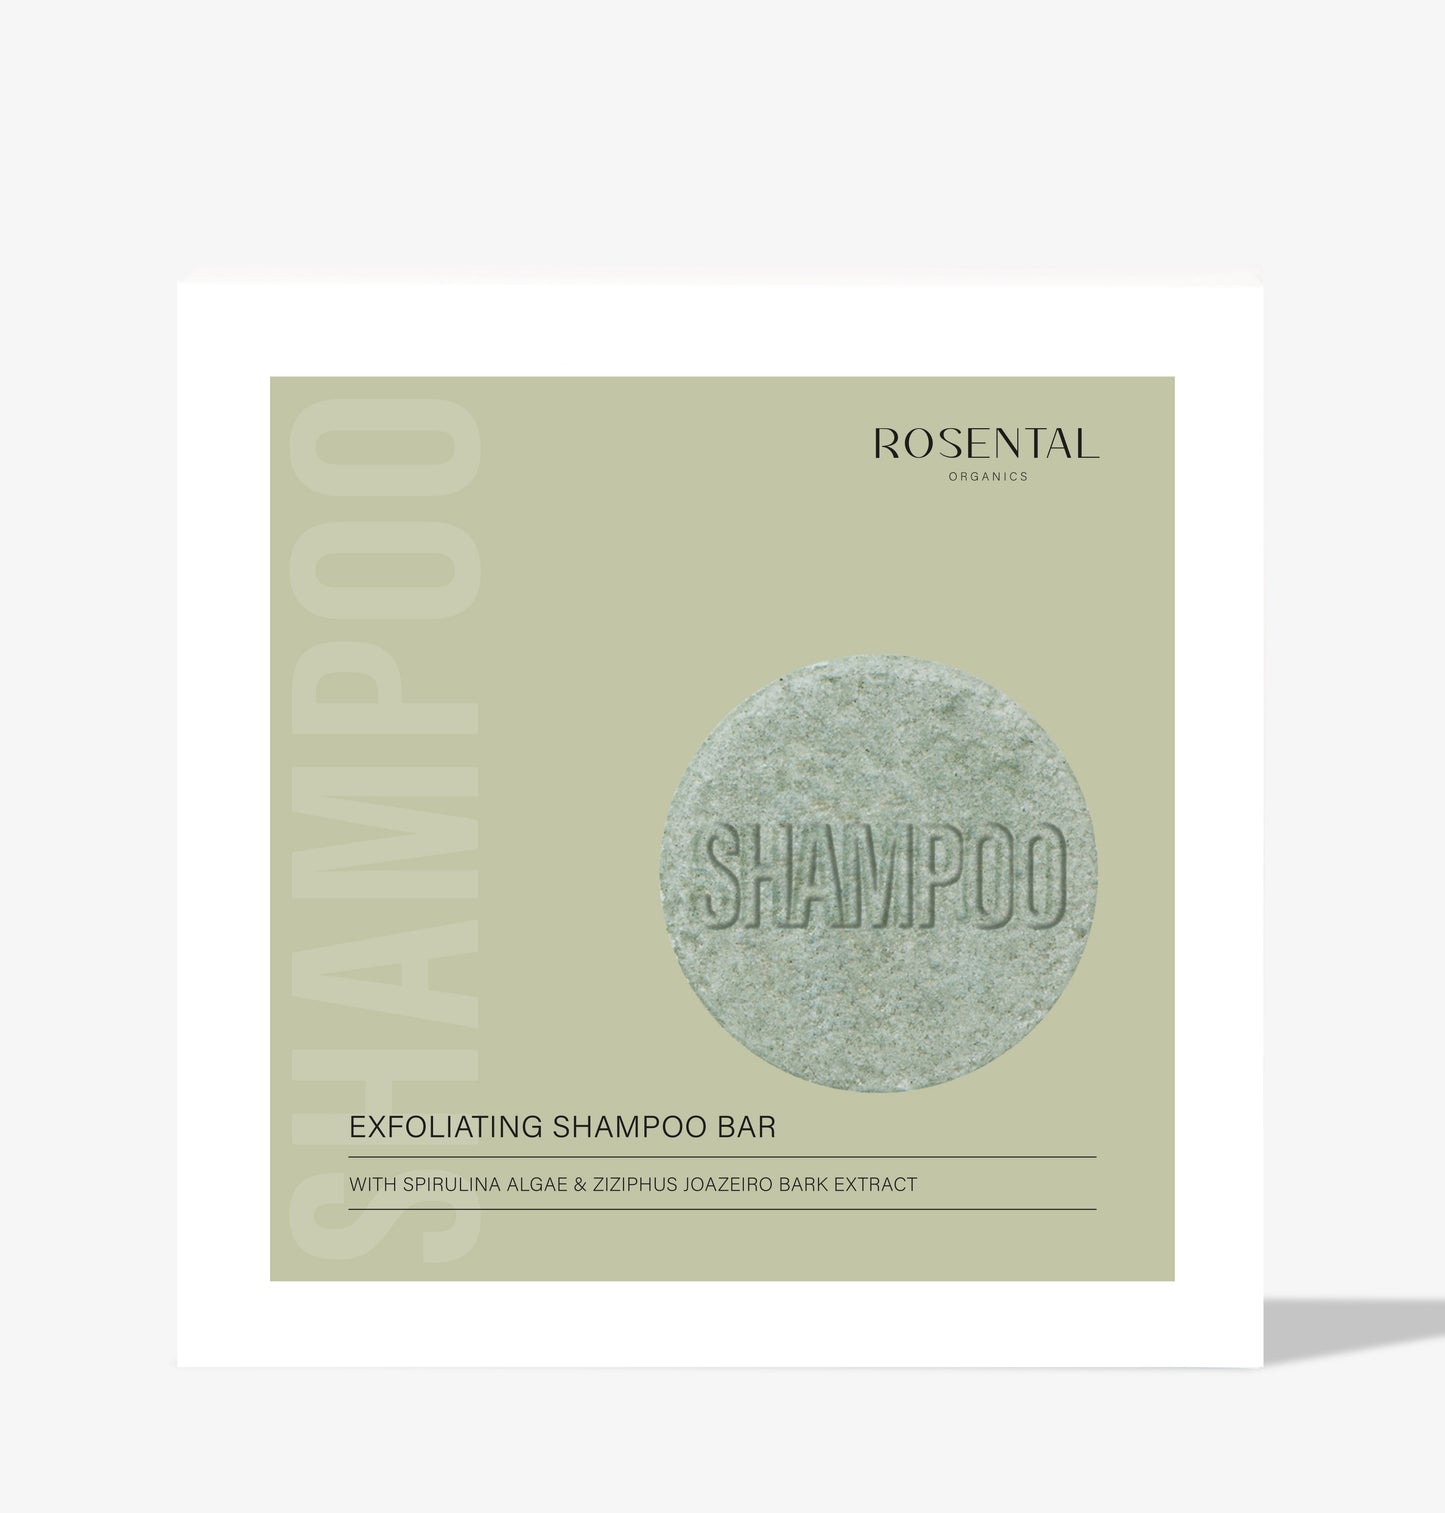 Exfoliating Shampoo Bar | with Spirulina Algae & Ziziphus Joazeiro Bark Extract